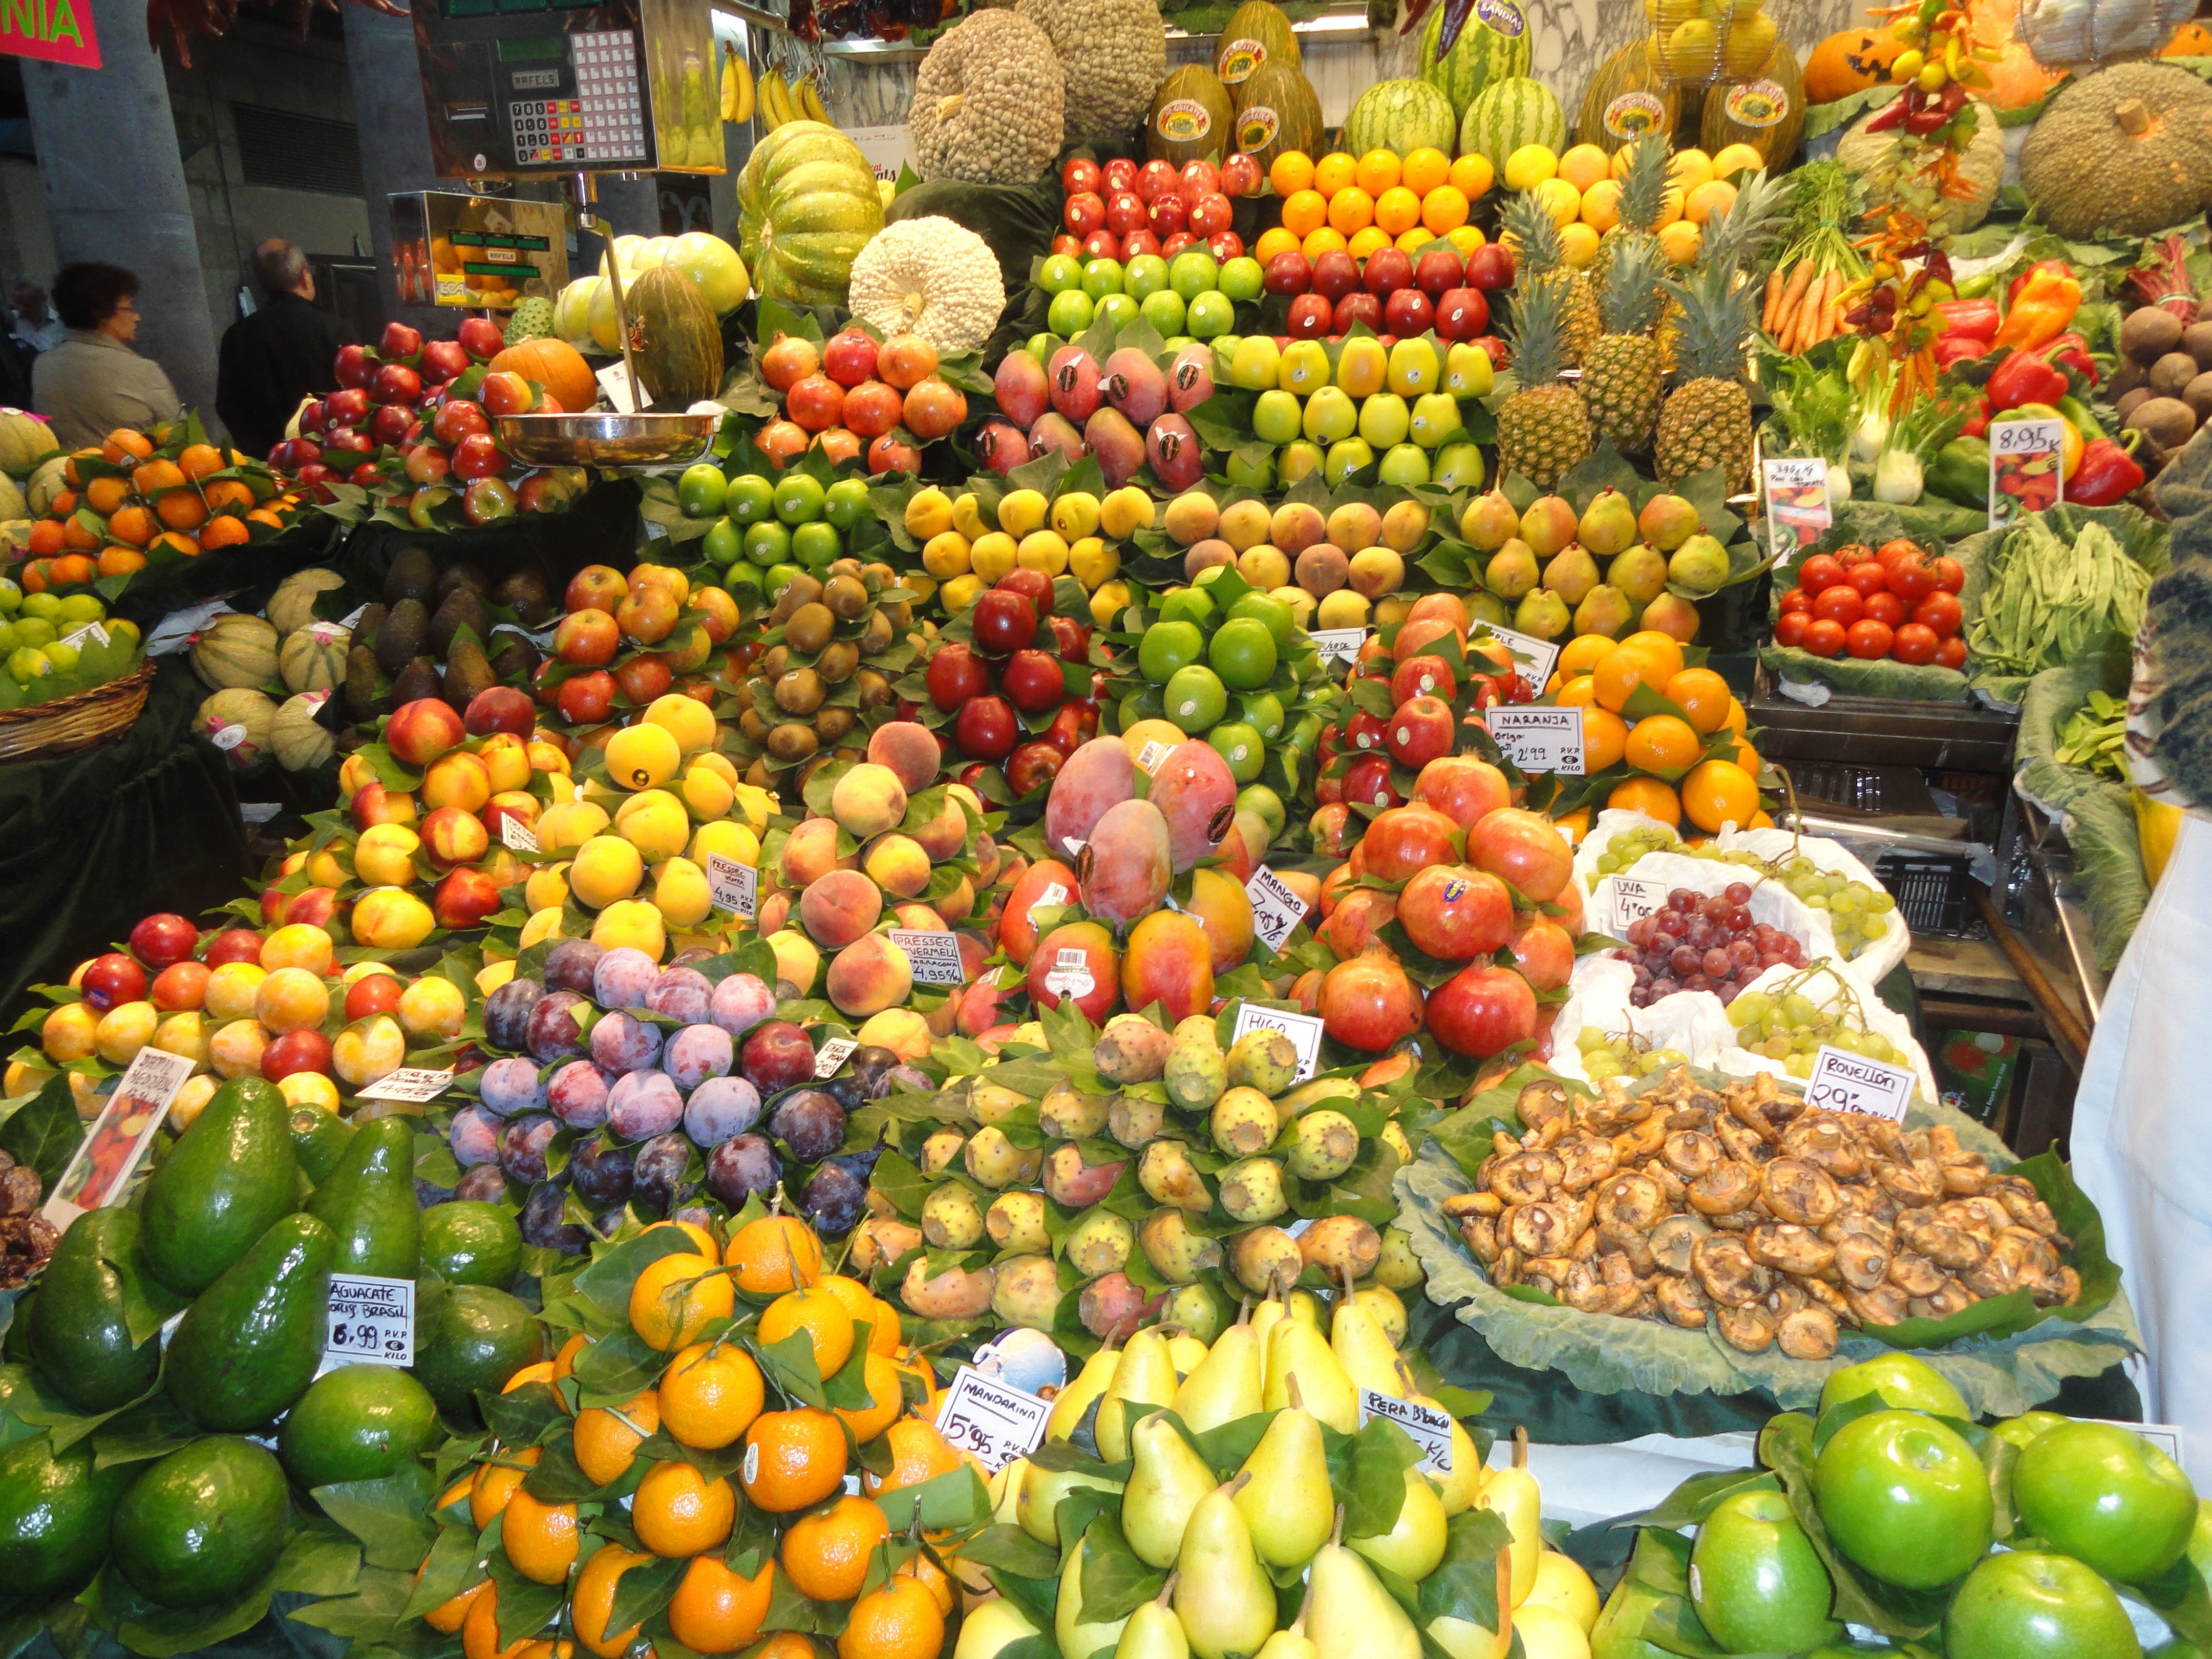 فروش عمده <a href='/last-search/?q=میوه'>میوه</a> های استوایی در بازار - مرکز خريد و فروش میوه استوایی | استوا میوه